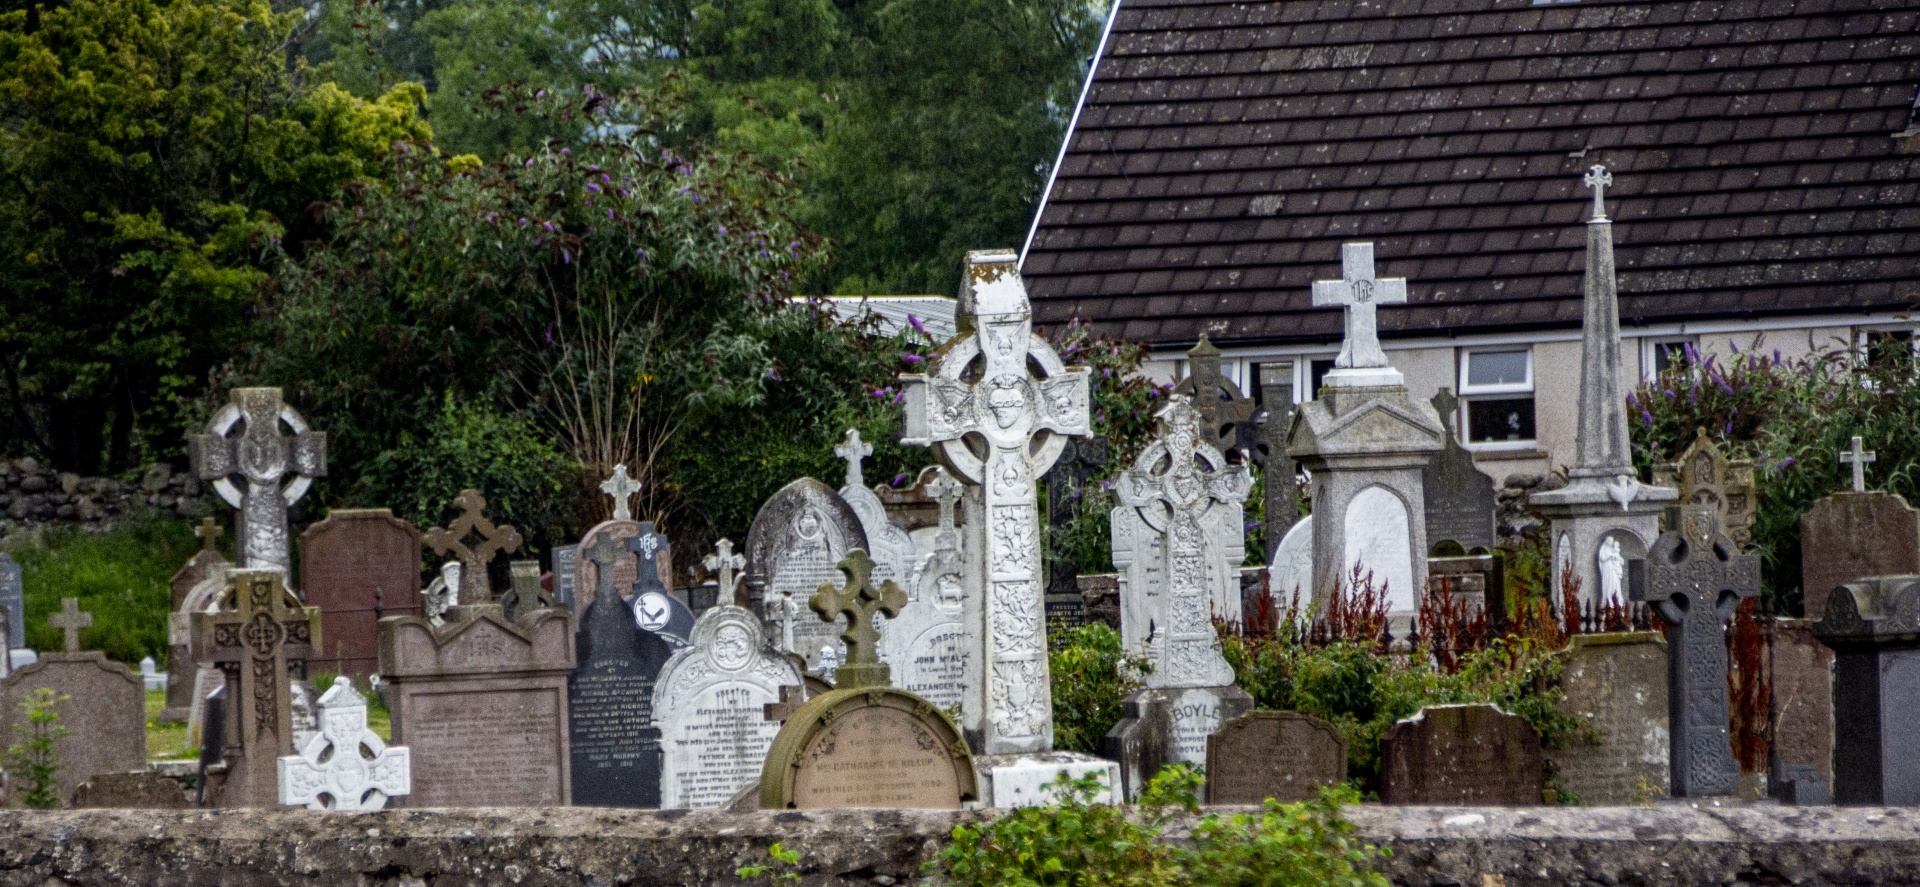 Northern Ireland Graveyard Cemetery